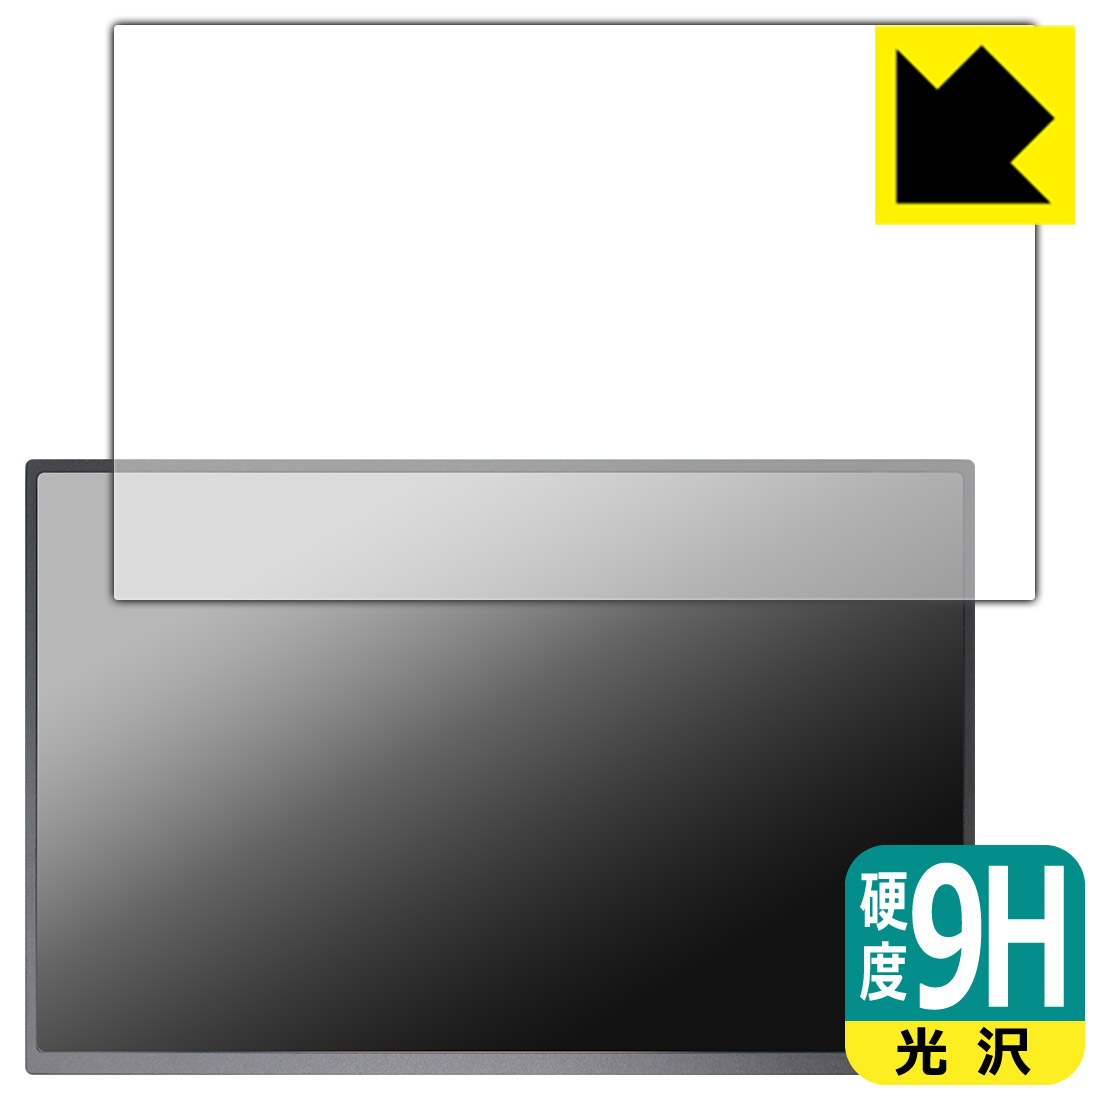 PDA工房 Acouto 18インチ 2K モバイルモニター XC18 Ultra 対応 9H高硬度[光沢] 保護 フィルム 日本製 自社製造直販